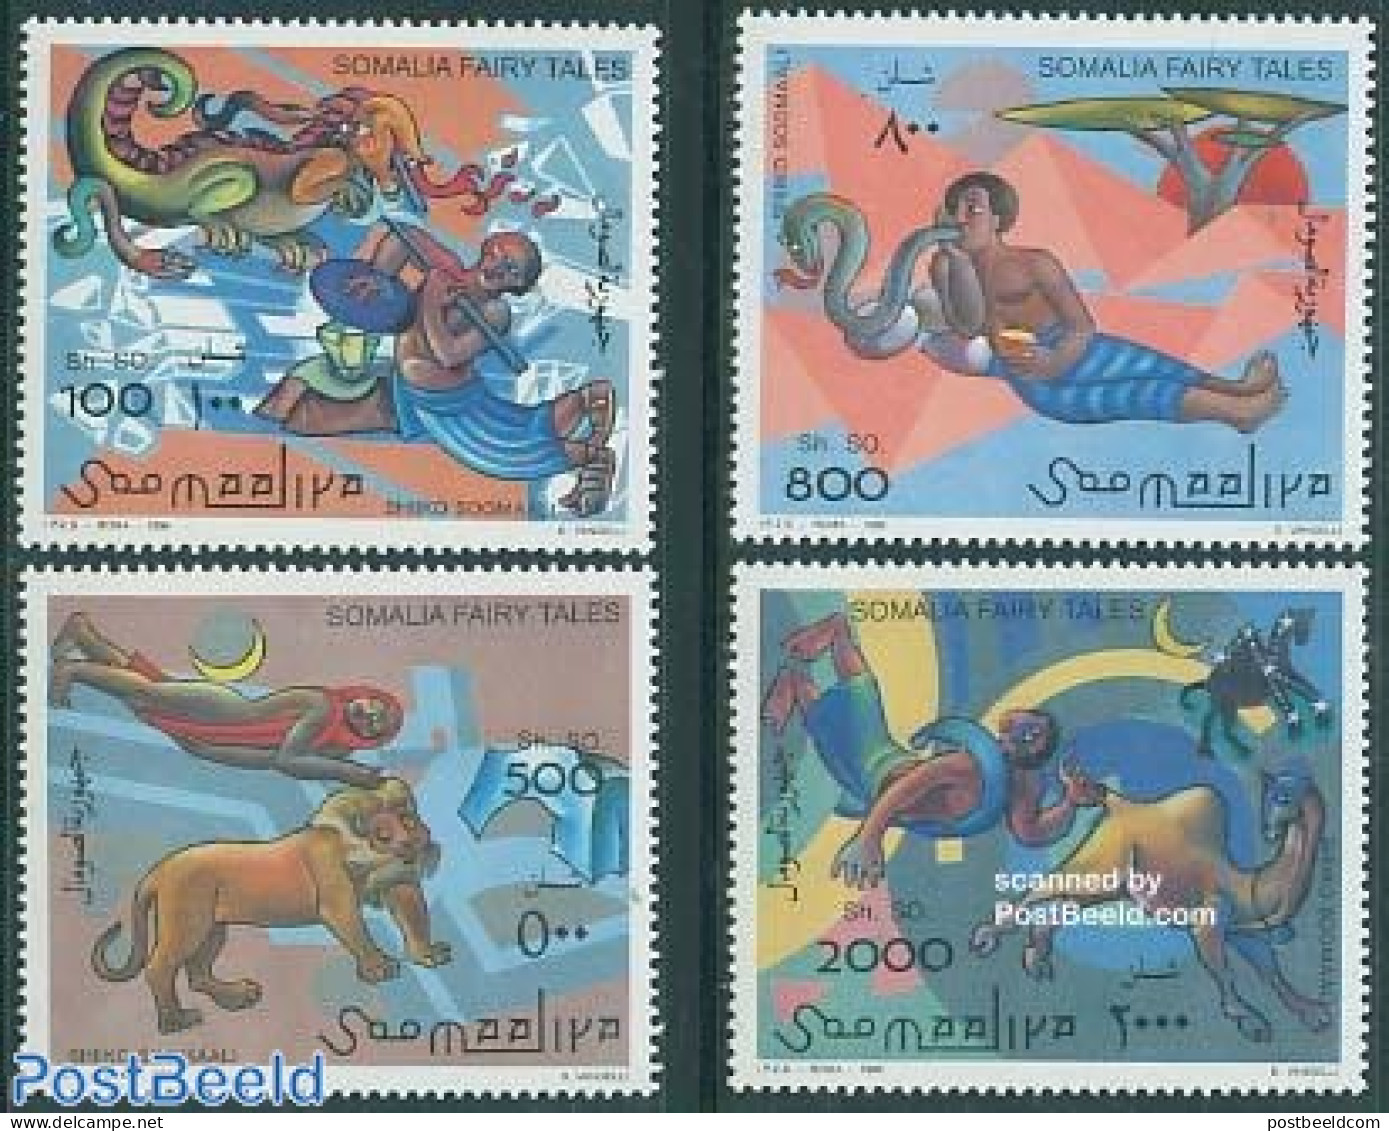 Somalia 1996 Fairy Tales 4v, Mint NH, Art - Fairytales - Märchen, Sagen & Legenden